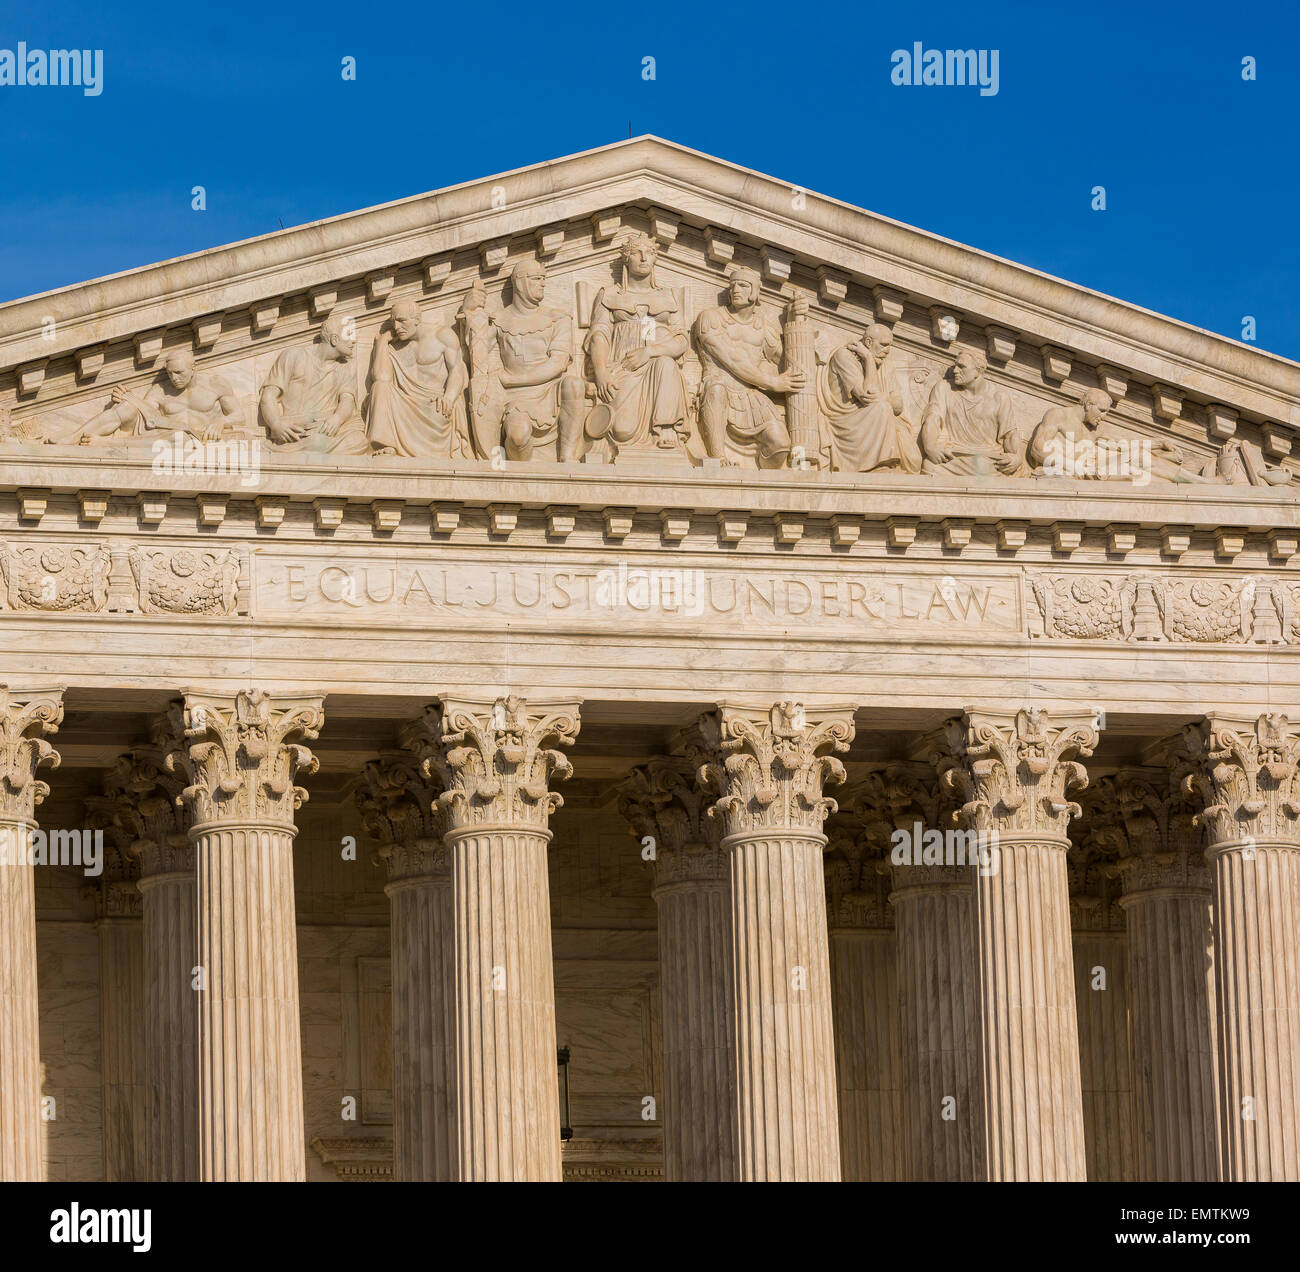 WASHINGTON, DC, Stati Uniti d'America - La Corte suprema degli Stati Uniti esterno dell'edificio. Foto Stock